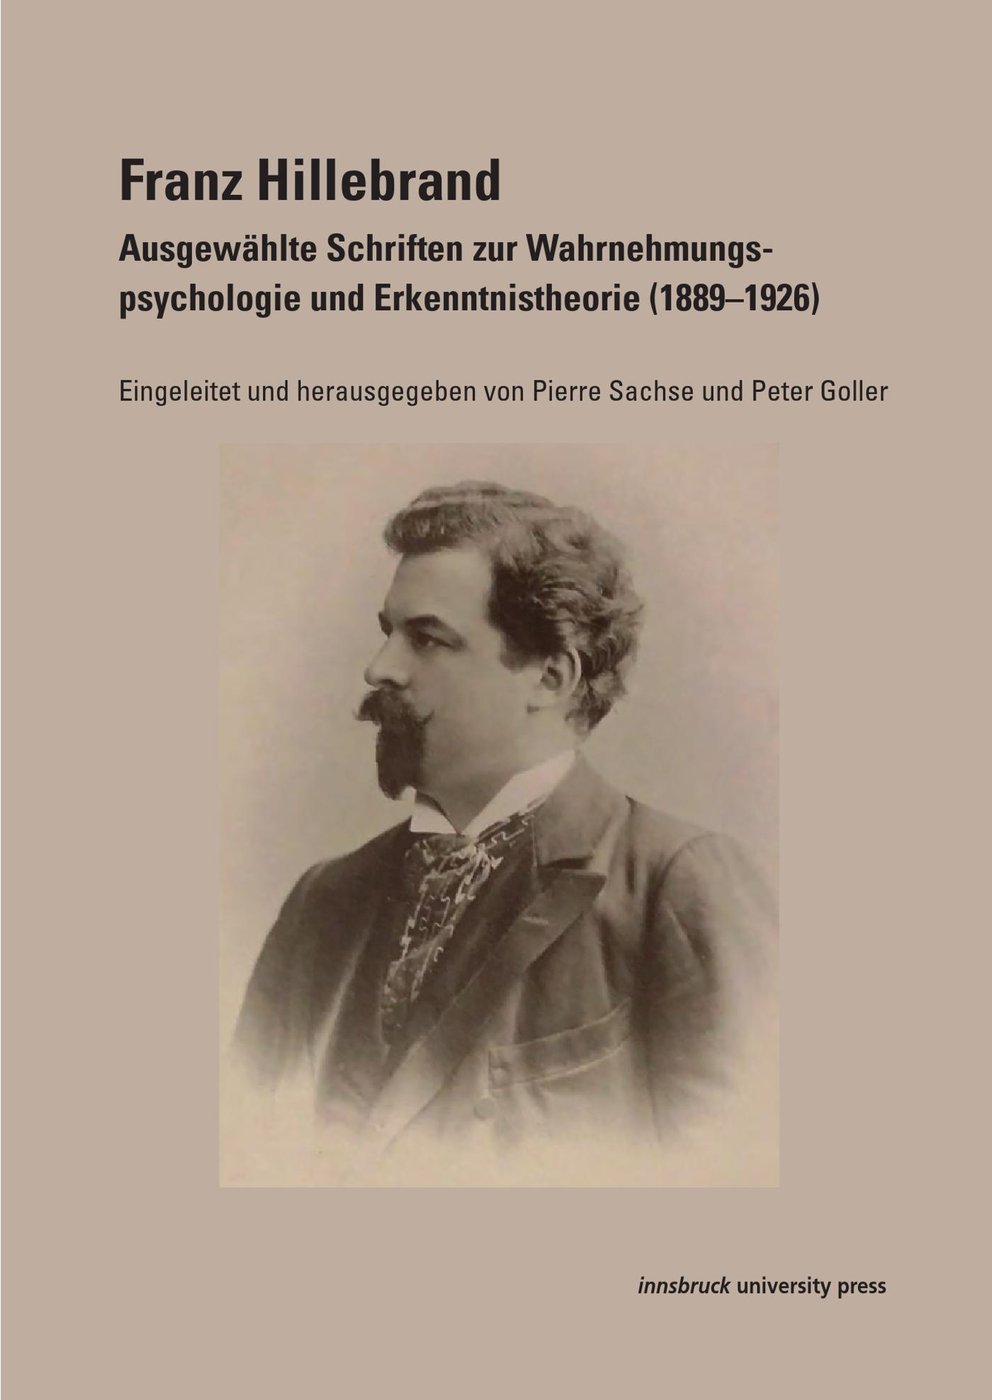 F. Hillebrand Ausgewählte Schriften, (c) Innsbruck University Press